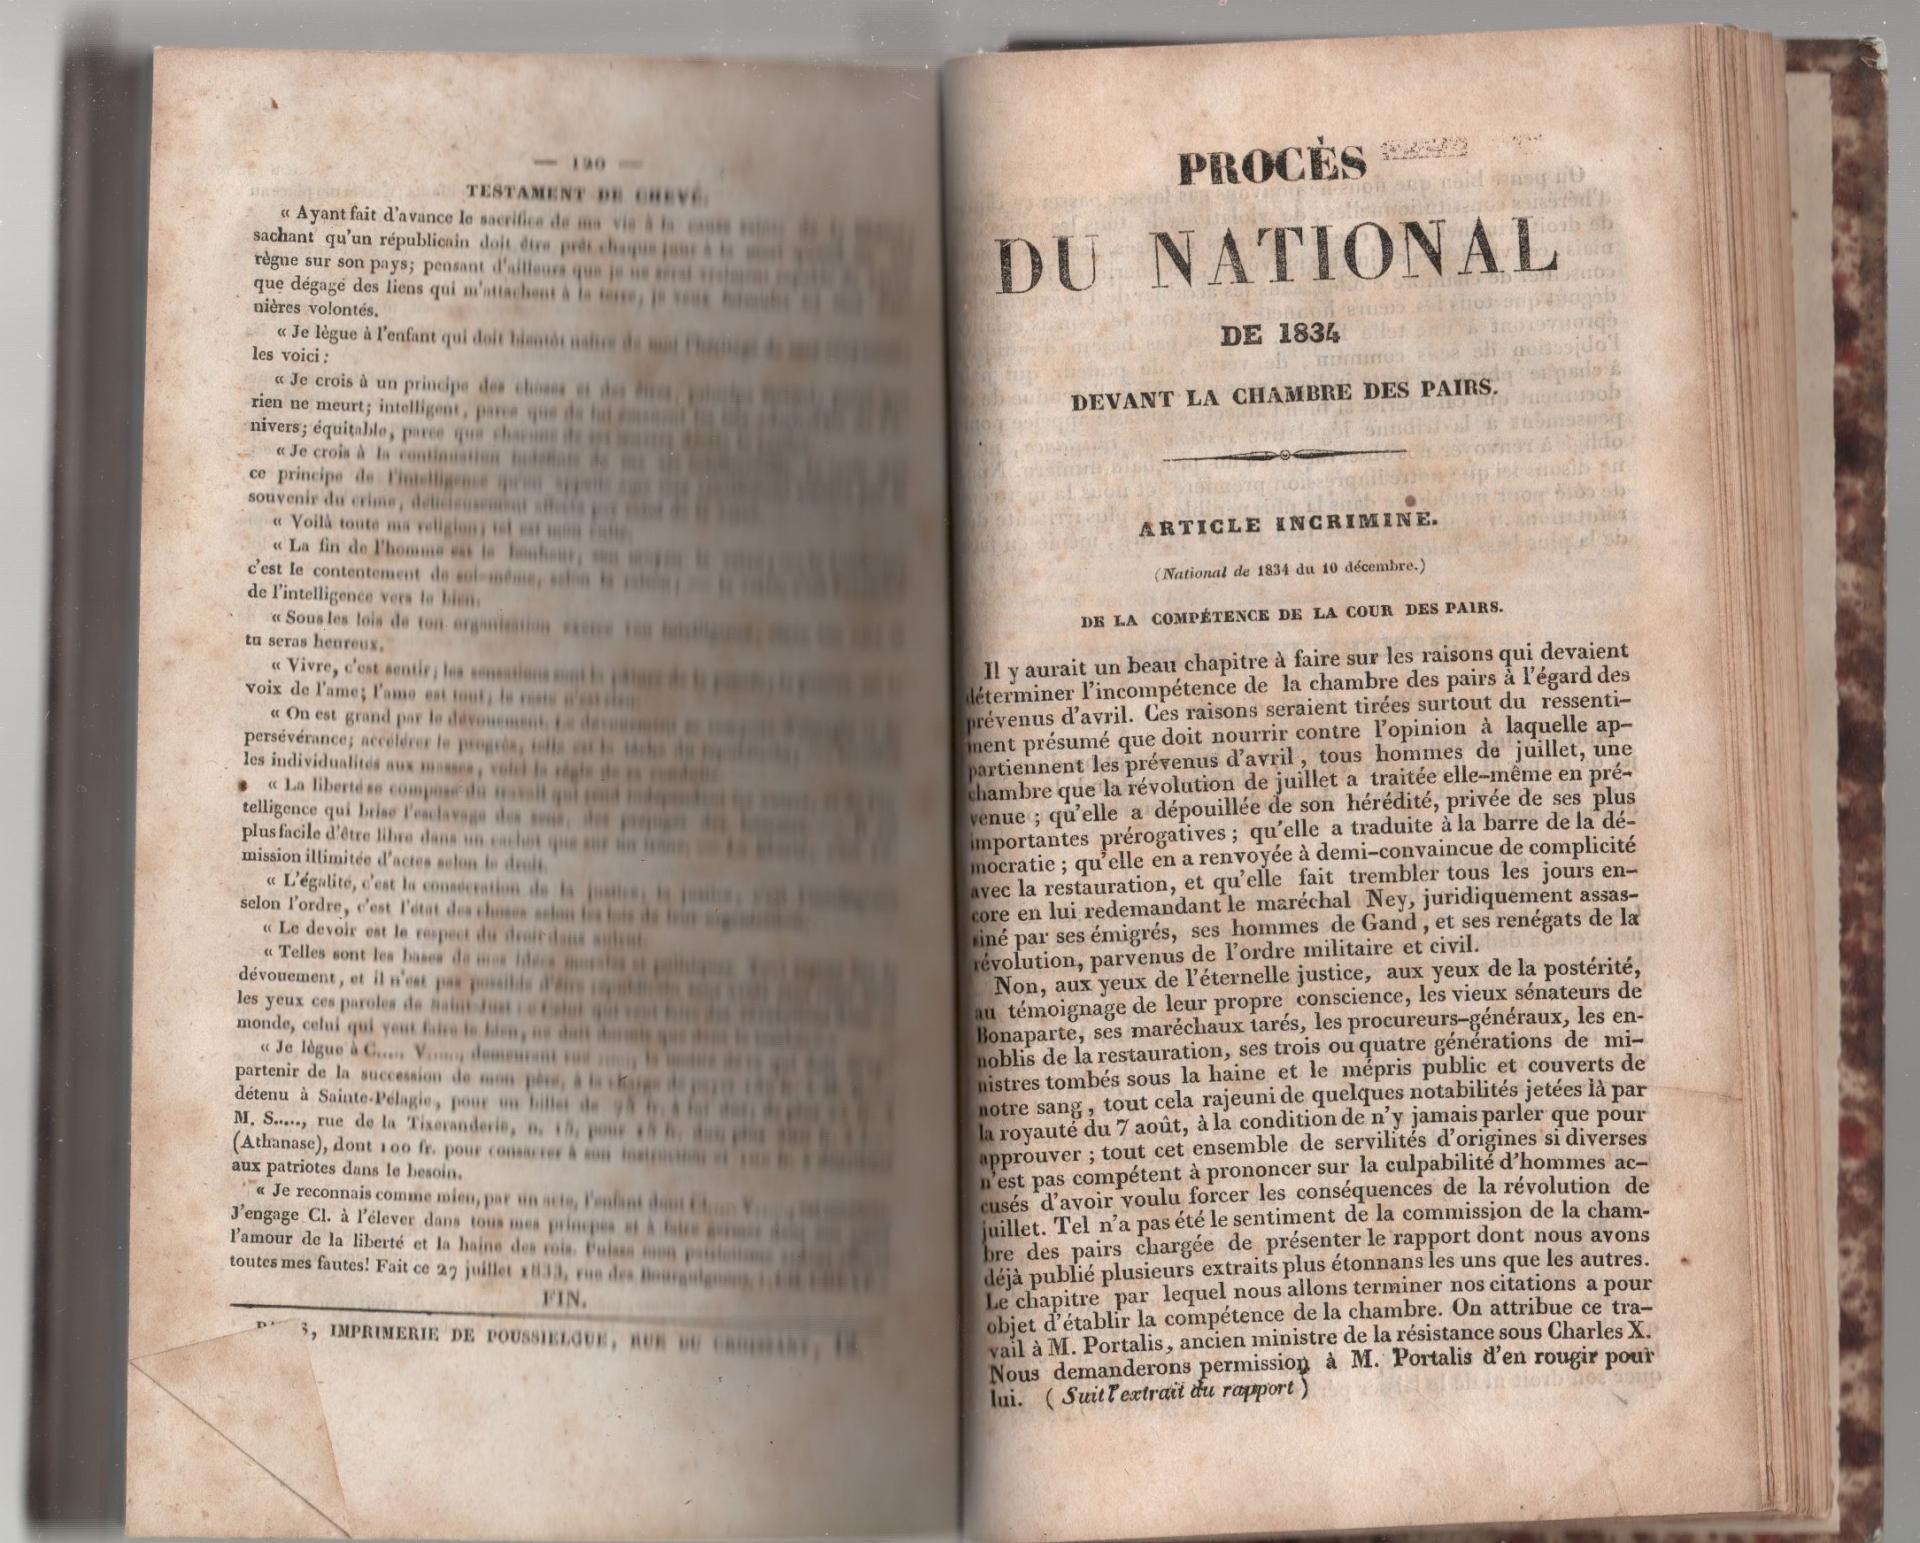 Proces du national de 1834 devant la chambre des pairs